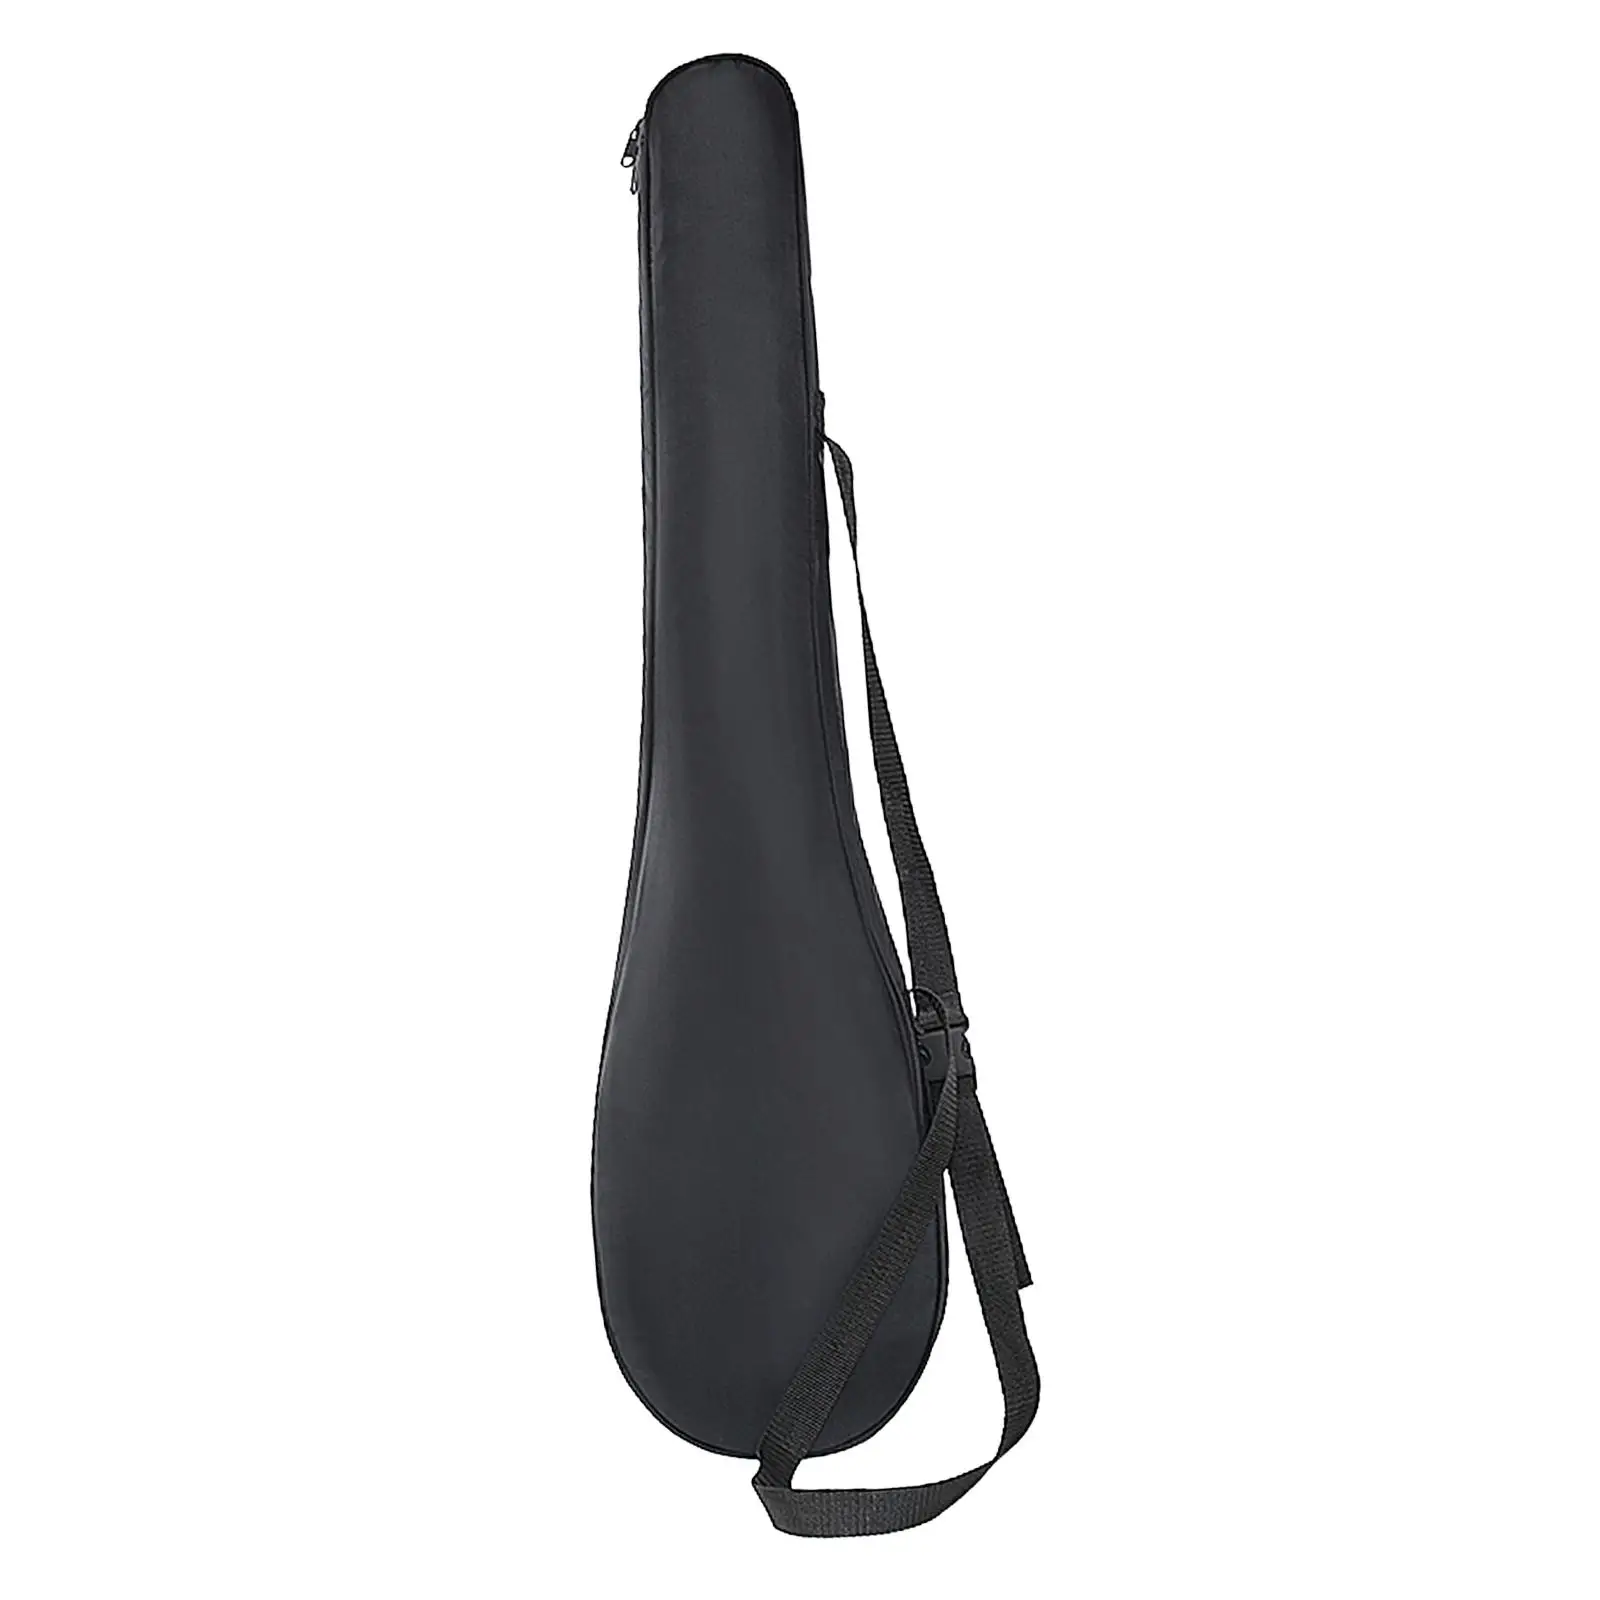 Kayak Paddle Bag Kayaking Paddle Transportation Bag Lightweight Adjustable Shoulder Strap Portable Oxford Cloth Paddle Carrier